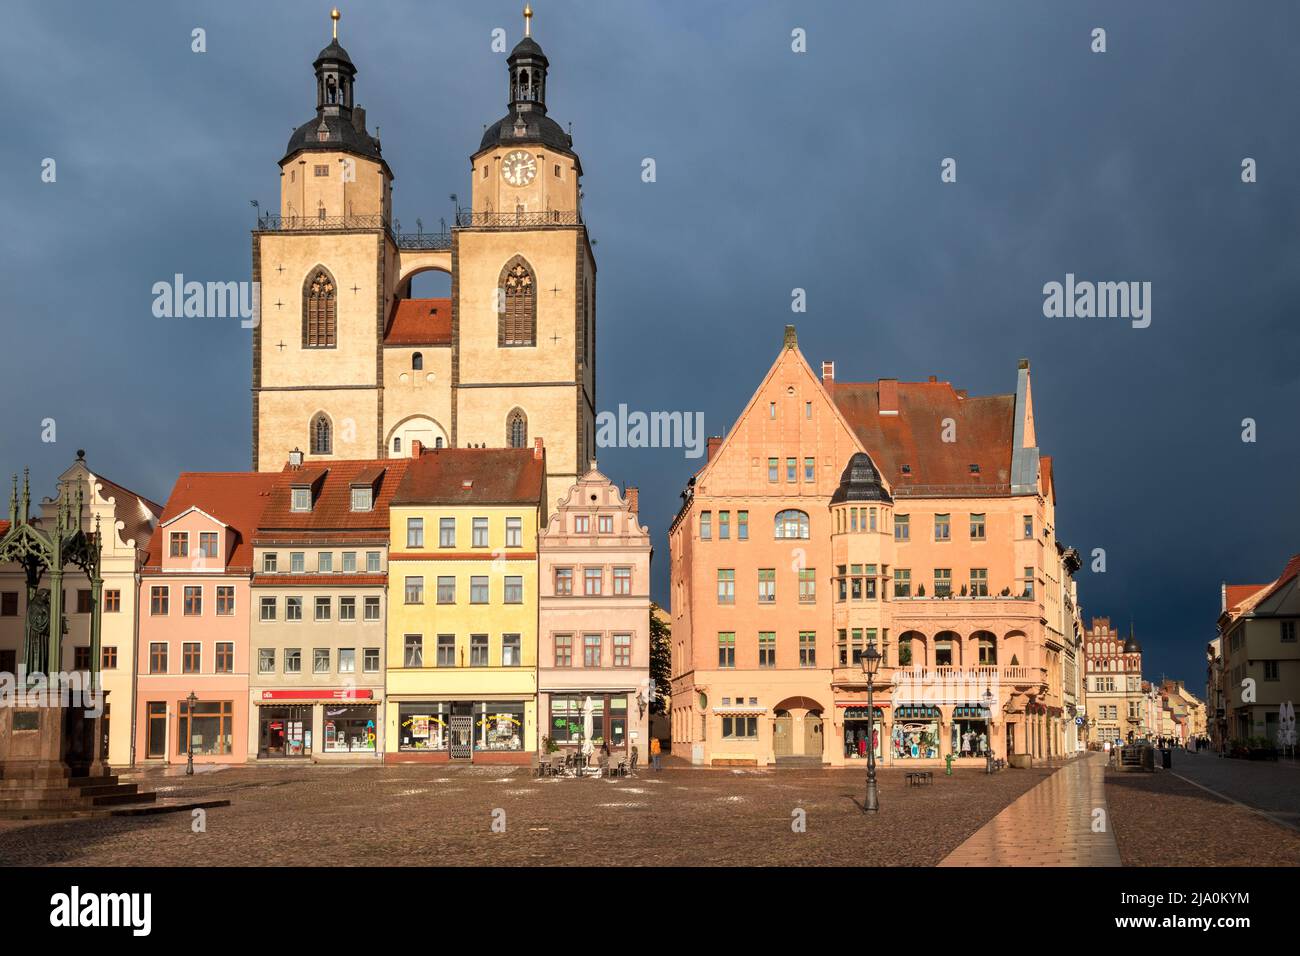 Blick auf den Marktplatz mit Rathaus und Stadtkirche Wittenberg in der Lutherstadt Wittenberg, Sachsen-Anhalt. Wittenberg, Deutschland - 26. April 201 Stockfoto